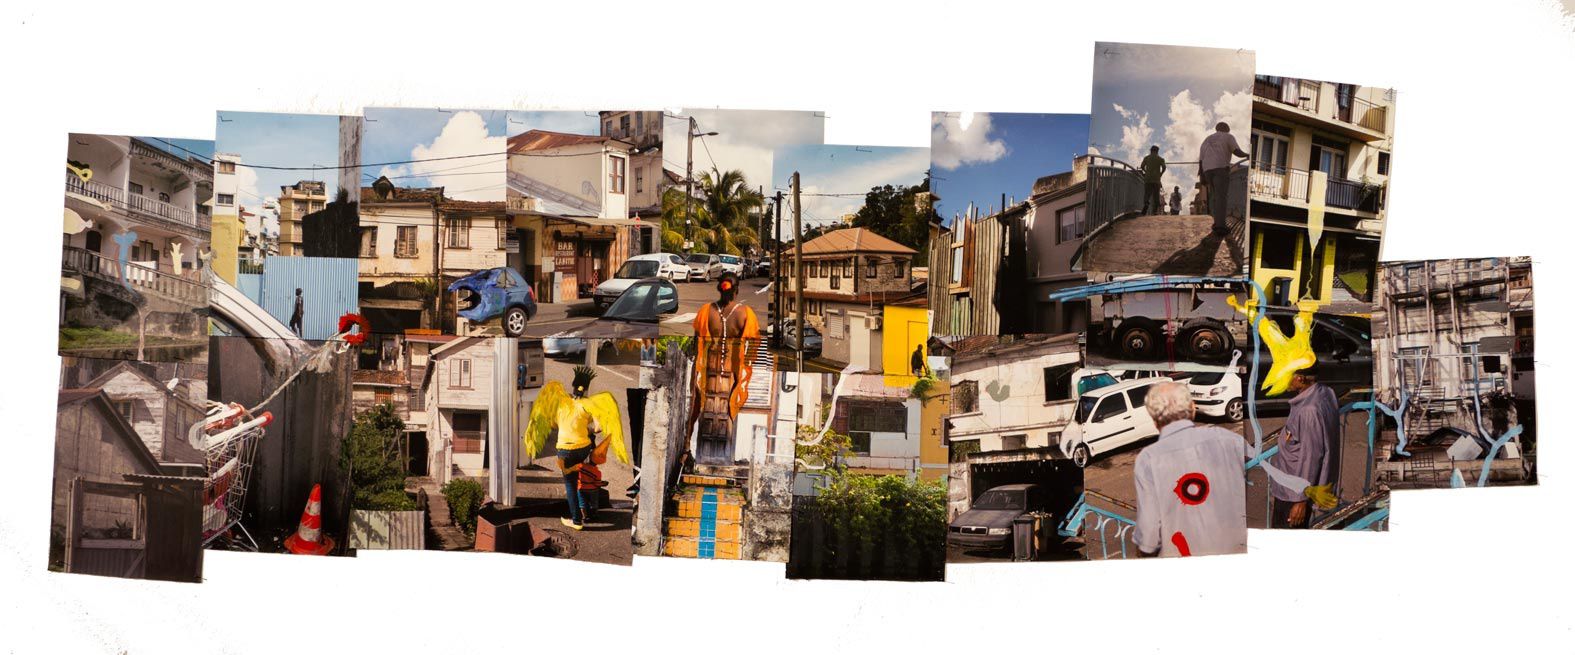 Mise en scène d'images, de films et d'objets à L'Atrium à Fort-de-France, Biennale Internationale d'Art Contemporain de la Martinique. nov. 2013 - janv 2014